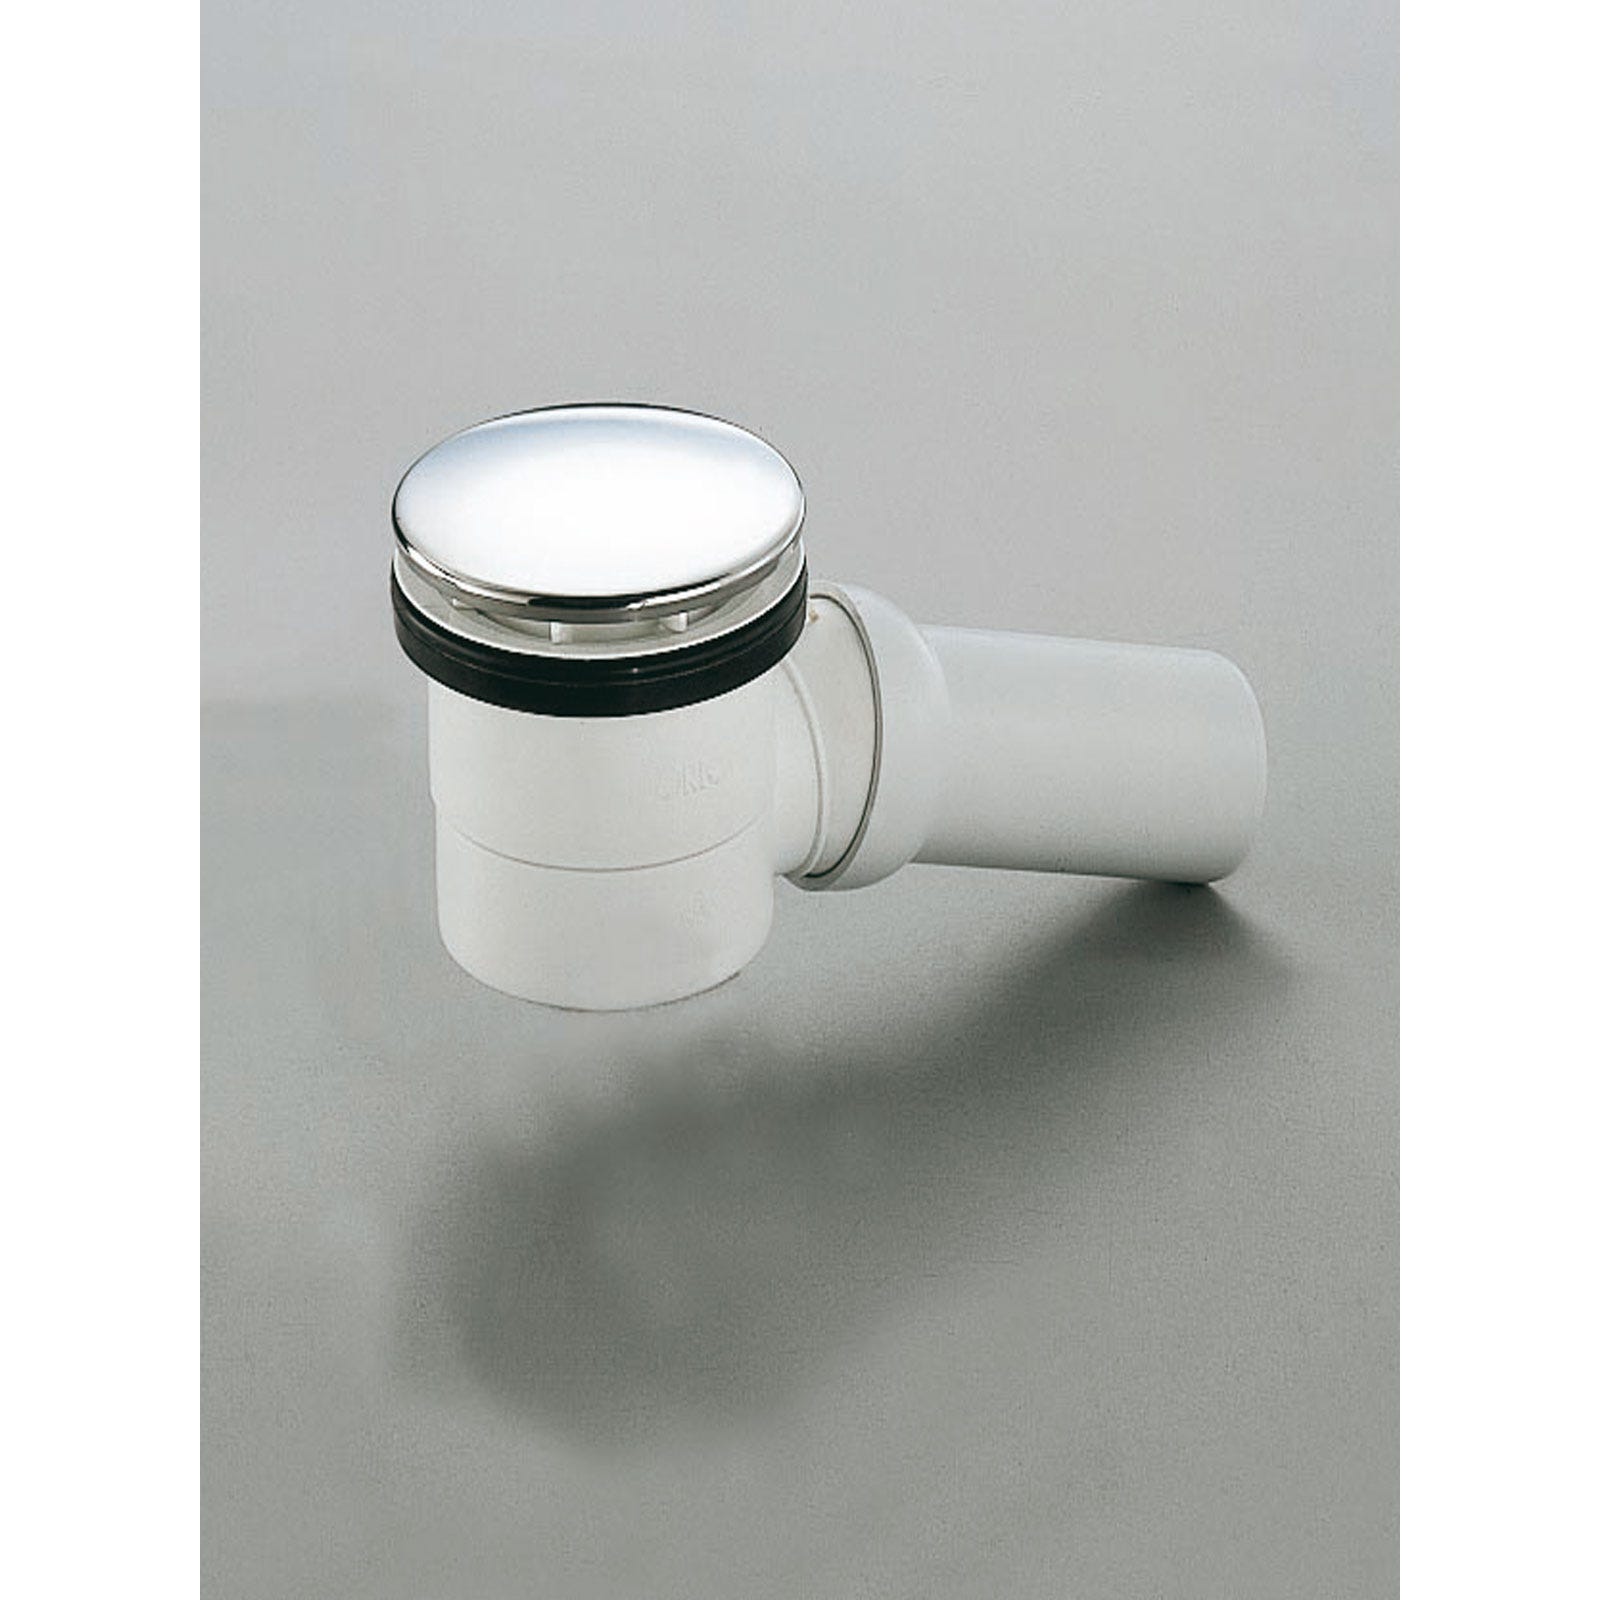 Schulte receveur de douche acrylique, 140 x 90 x 3,5 cm, effet blanc, rectangulaire, extra plat à poser ou à encastrer, avec pieds, bac à douche 2